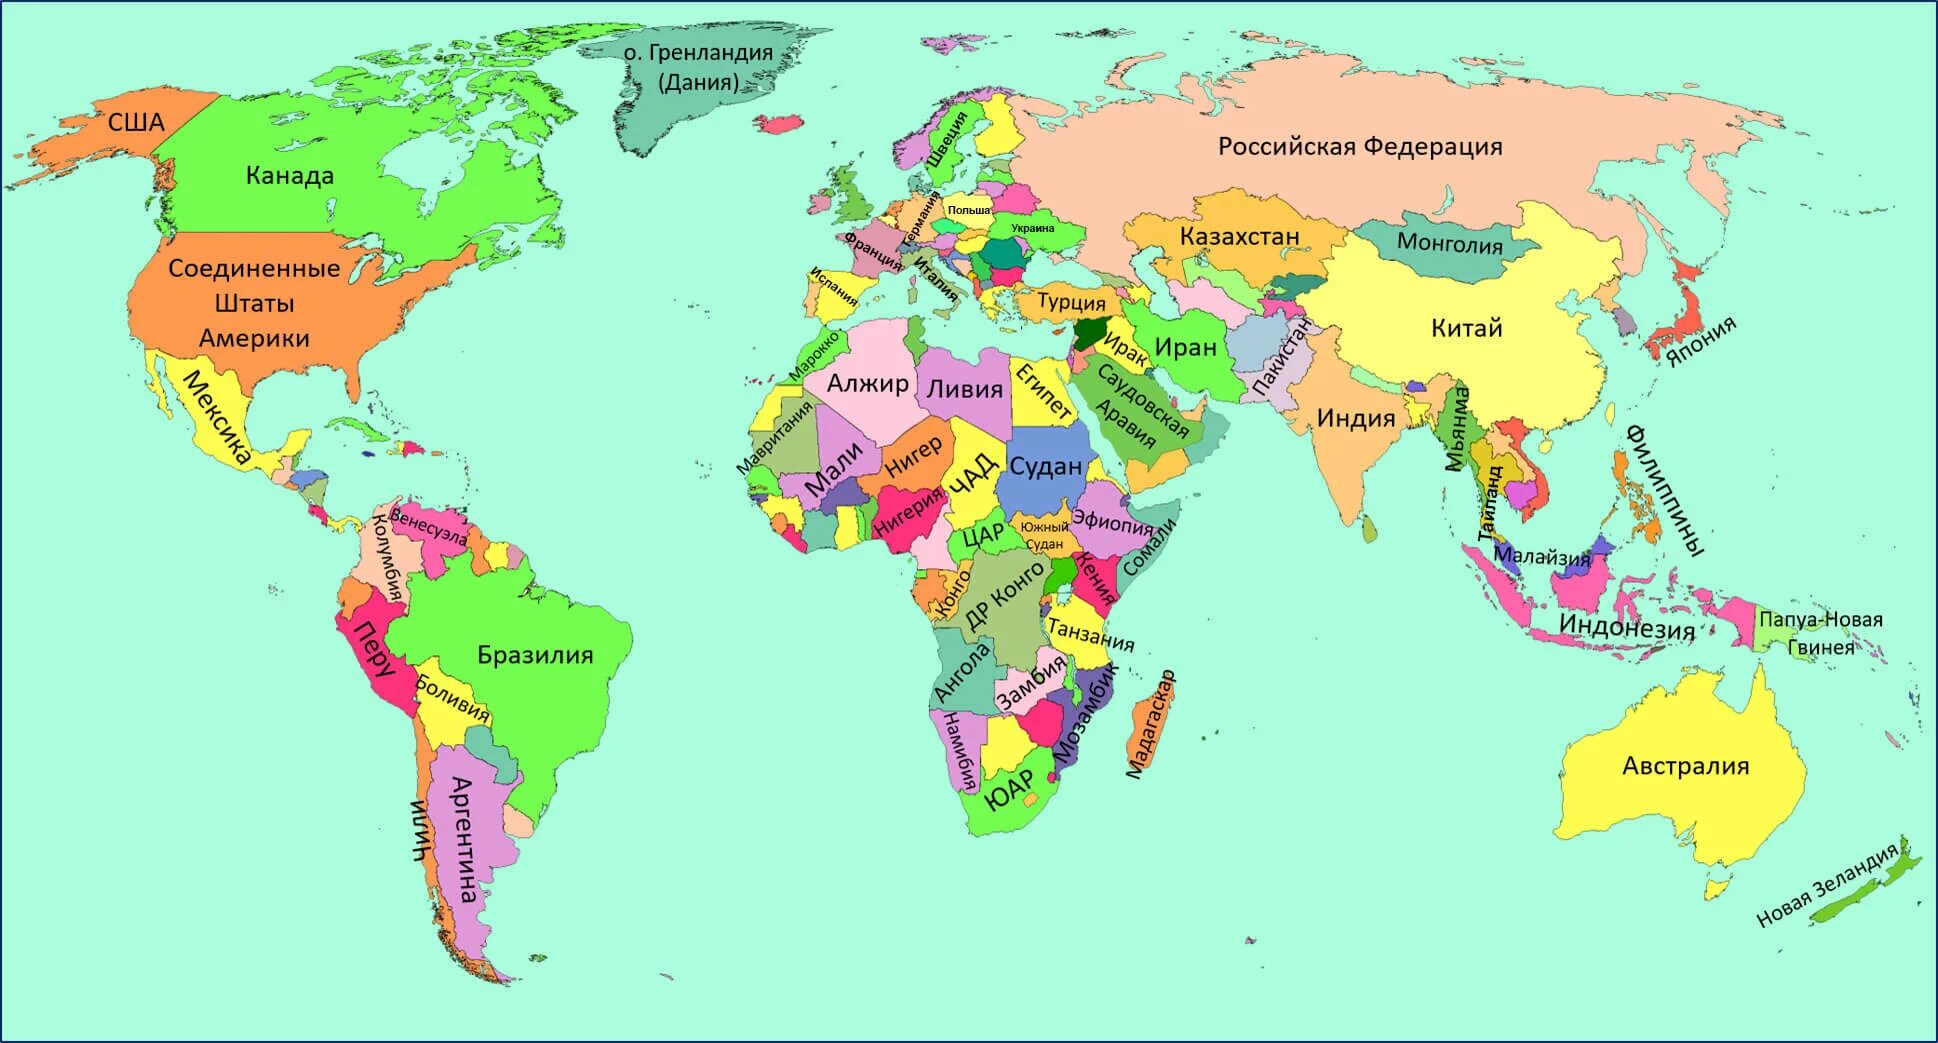 Есть на земле большая страна. Карта мира географическая по странам на русском крупная. Политическая карта мира со странами крупно на русском. Географическая карта мира со странами крупно на русском. Политическая карта мира с названиями стран на русском языке.